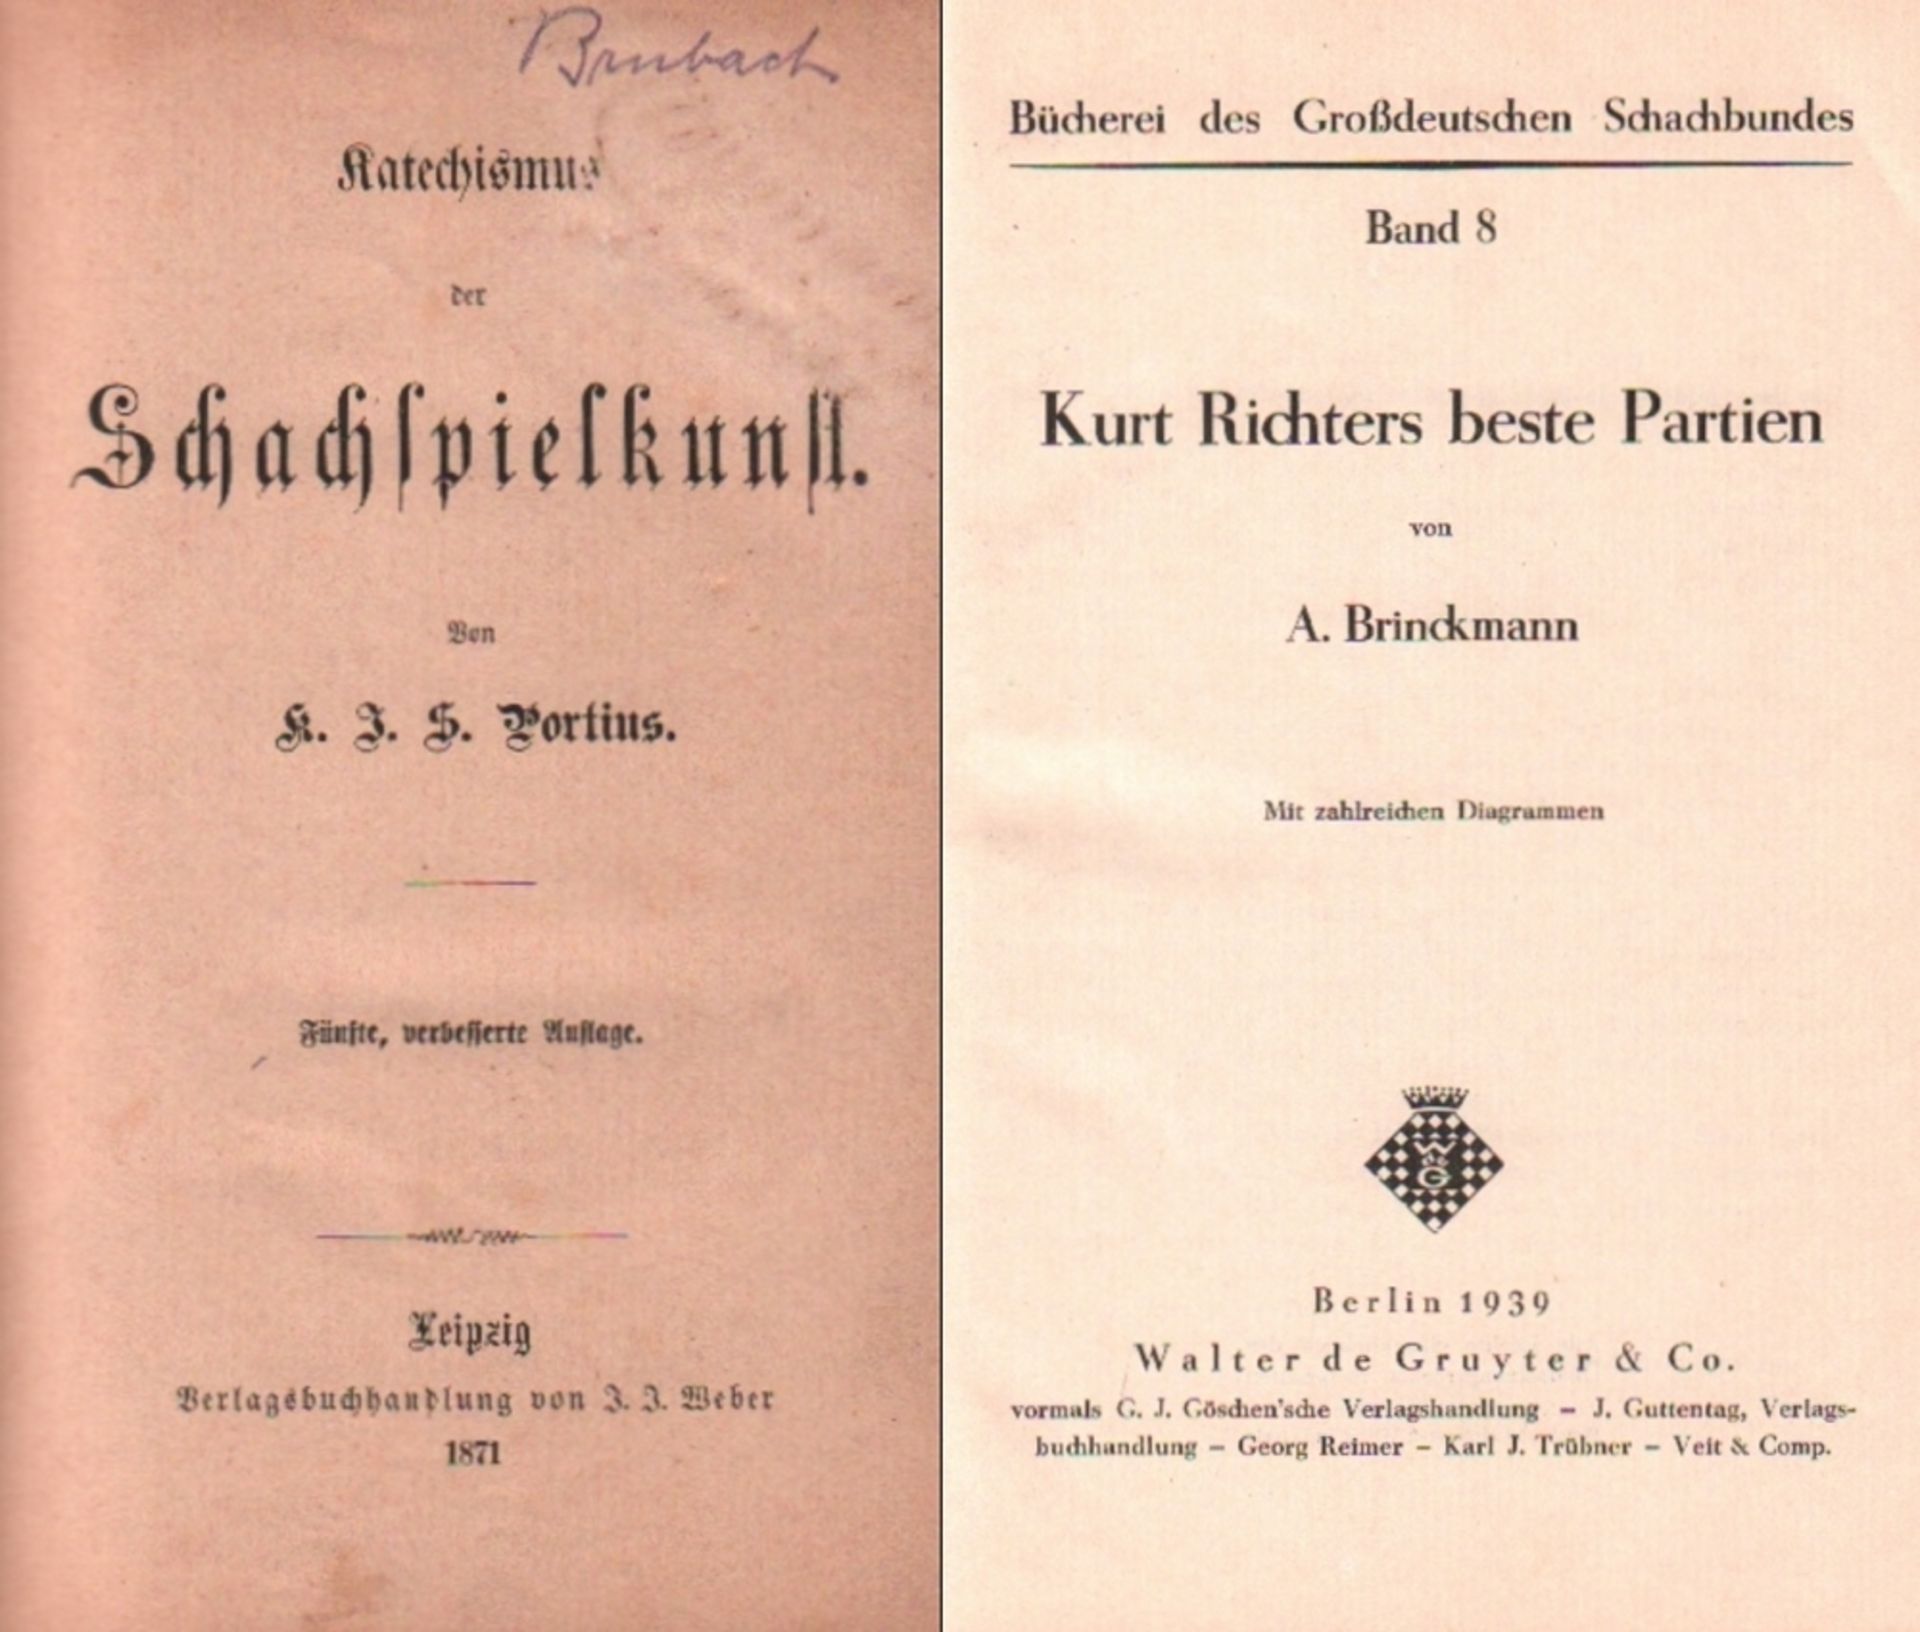 Portius, K. J. S. Katechismus der Schachspielkunst. 5., verbesserte Auflage. Leipzig, Weber, 1871.